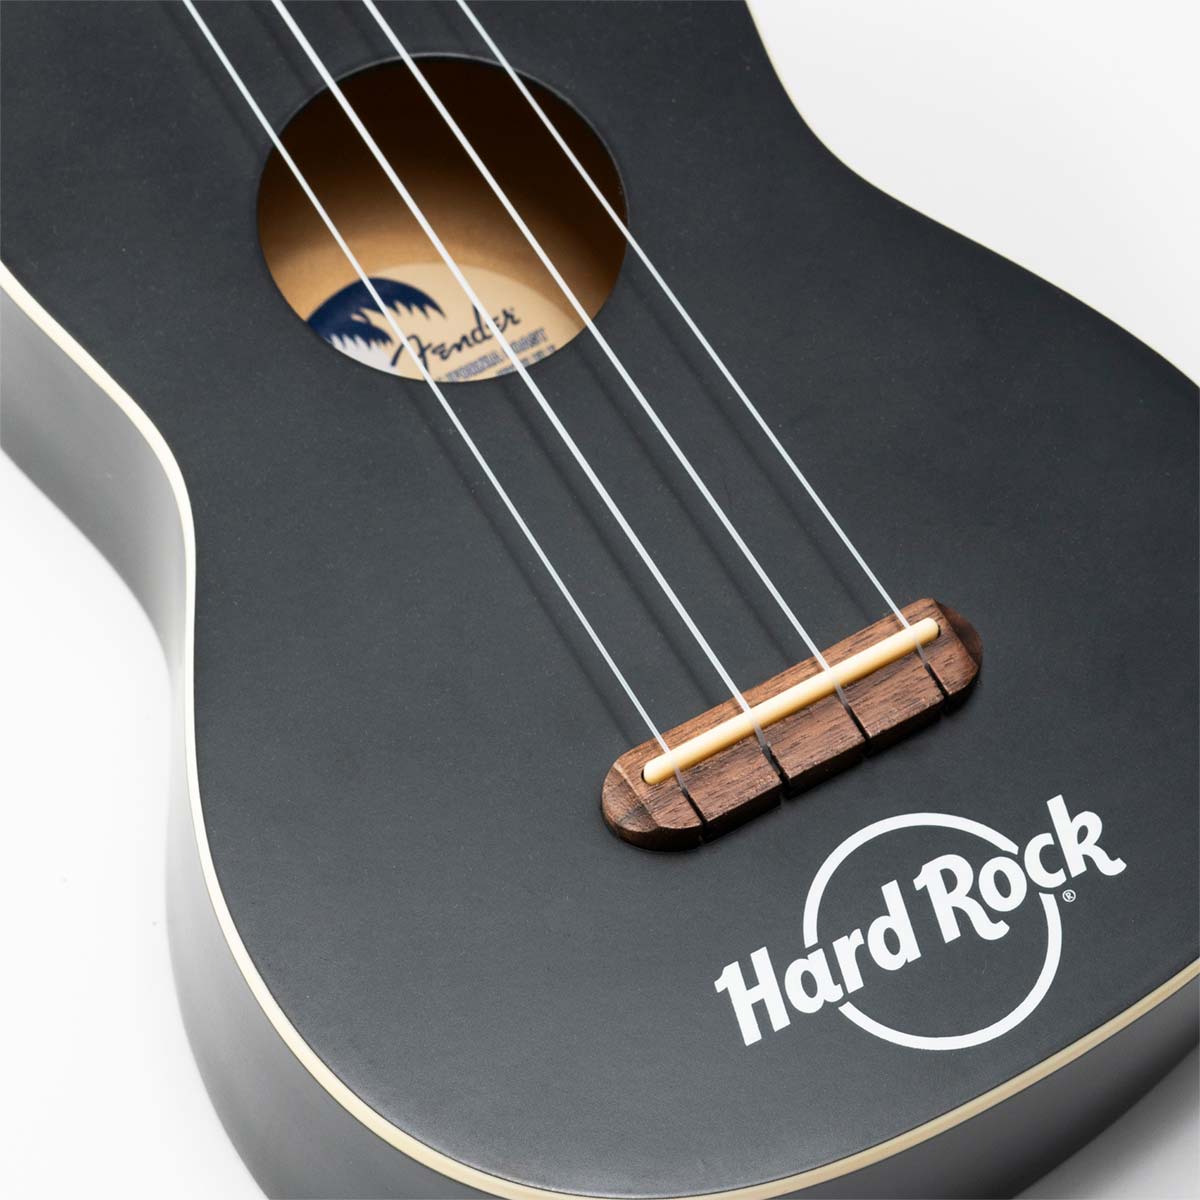 Fender x Hard Rock Venice Ukulele in Satin Black with Bag image number 2